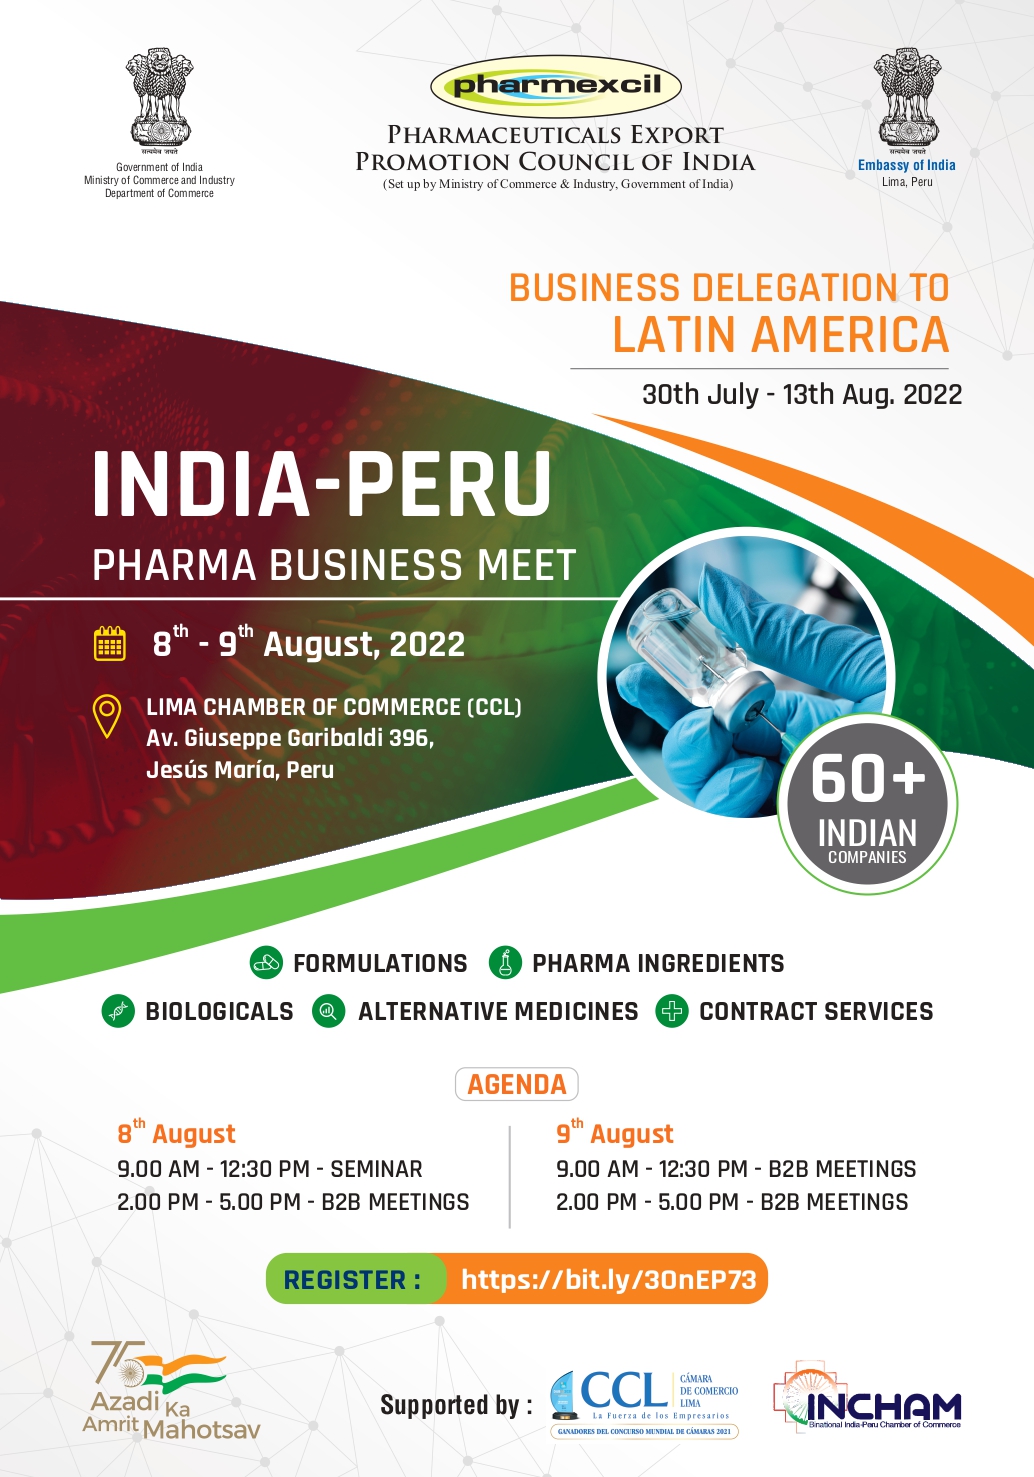 Delegaci&oacute;n Empresarial India-Per&uacute;: Rueda de Negocios Sector Farmac&eacute;utico (8 y 9 de agosto, 2022)